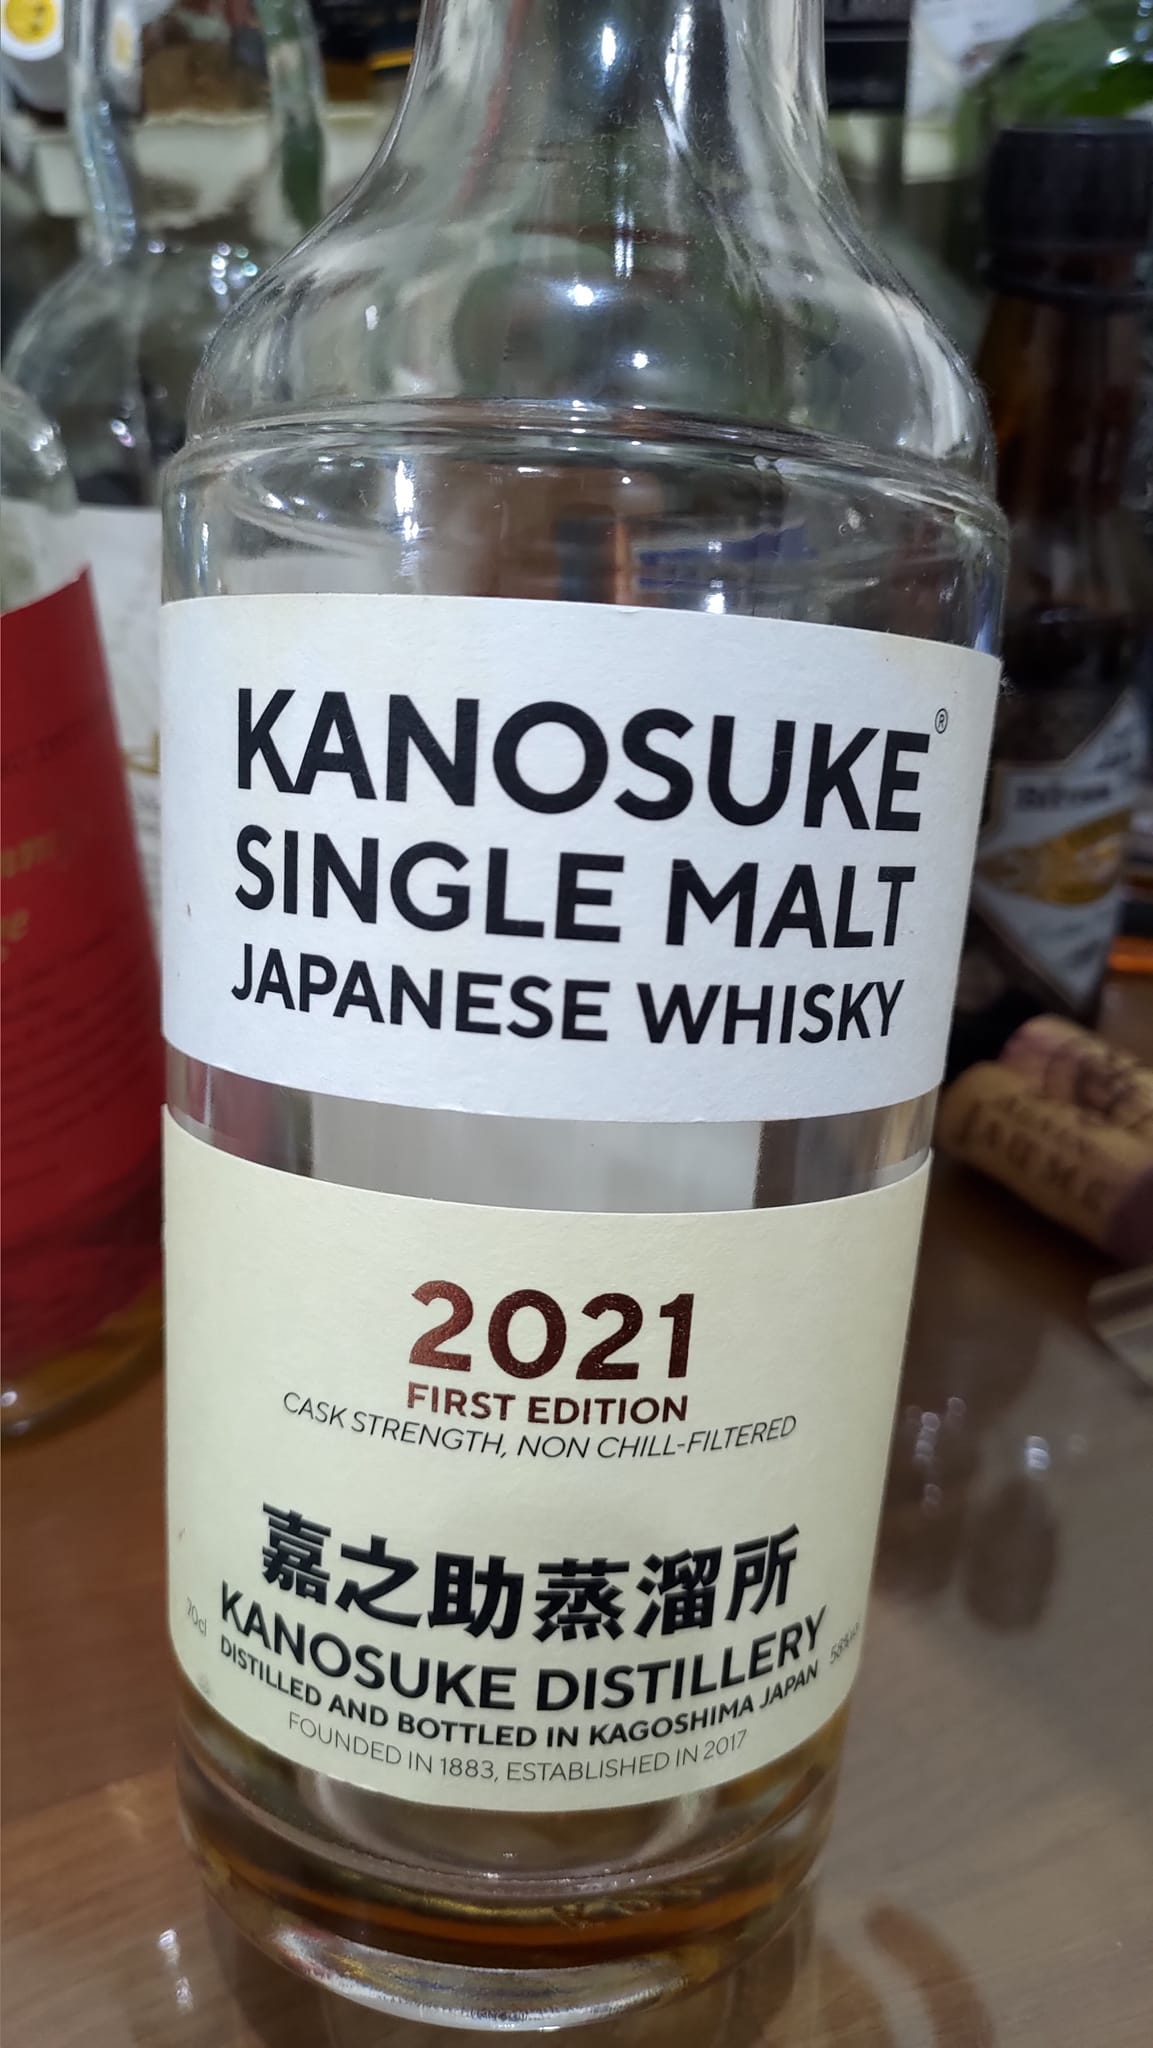 日本威士忌新浪潮來也!!! 嘉之助Kanosuke 2021 First Edition – 兩酒之